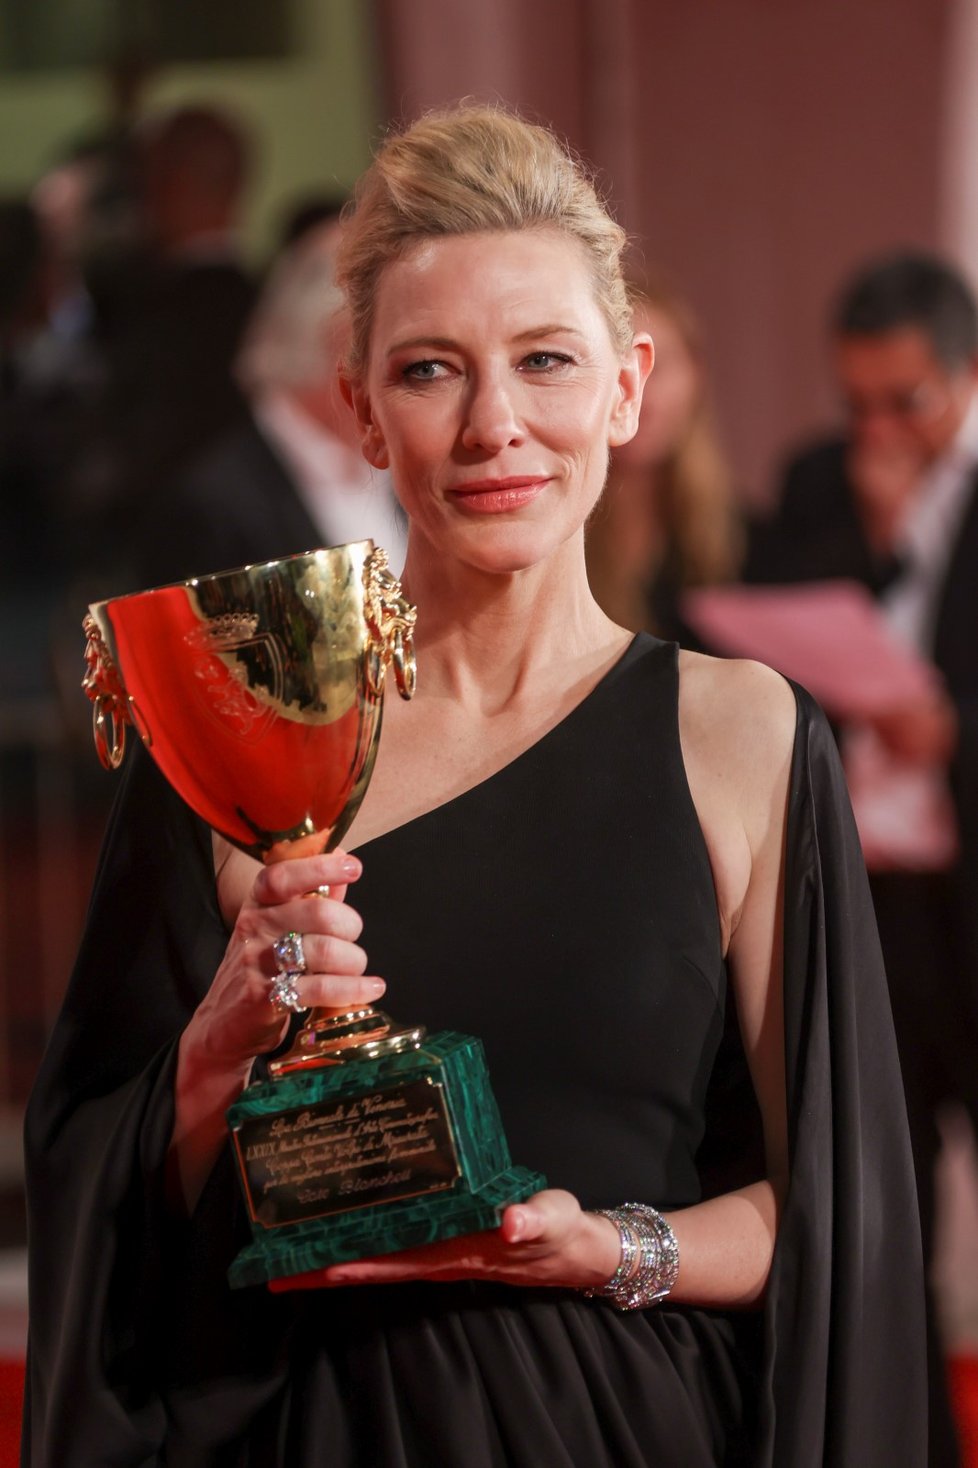 Cenu pro nejlepší herečku získala Cate Blanchettová za výkon ve filmu Tár amerického režiséra Todda Fielda, kde ztvárnila dirigentku německého symfonického orchestru, která se potýká s překážkami v prostředí, kde vládnou muži.